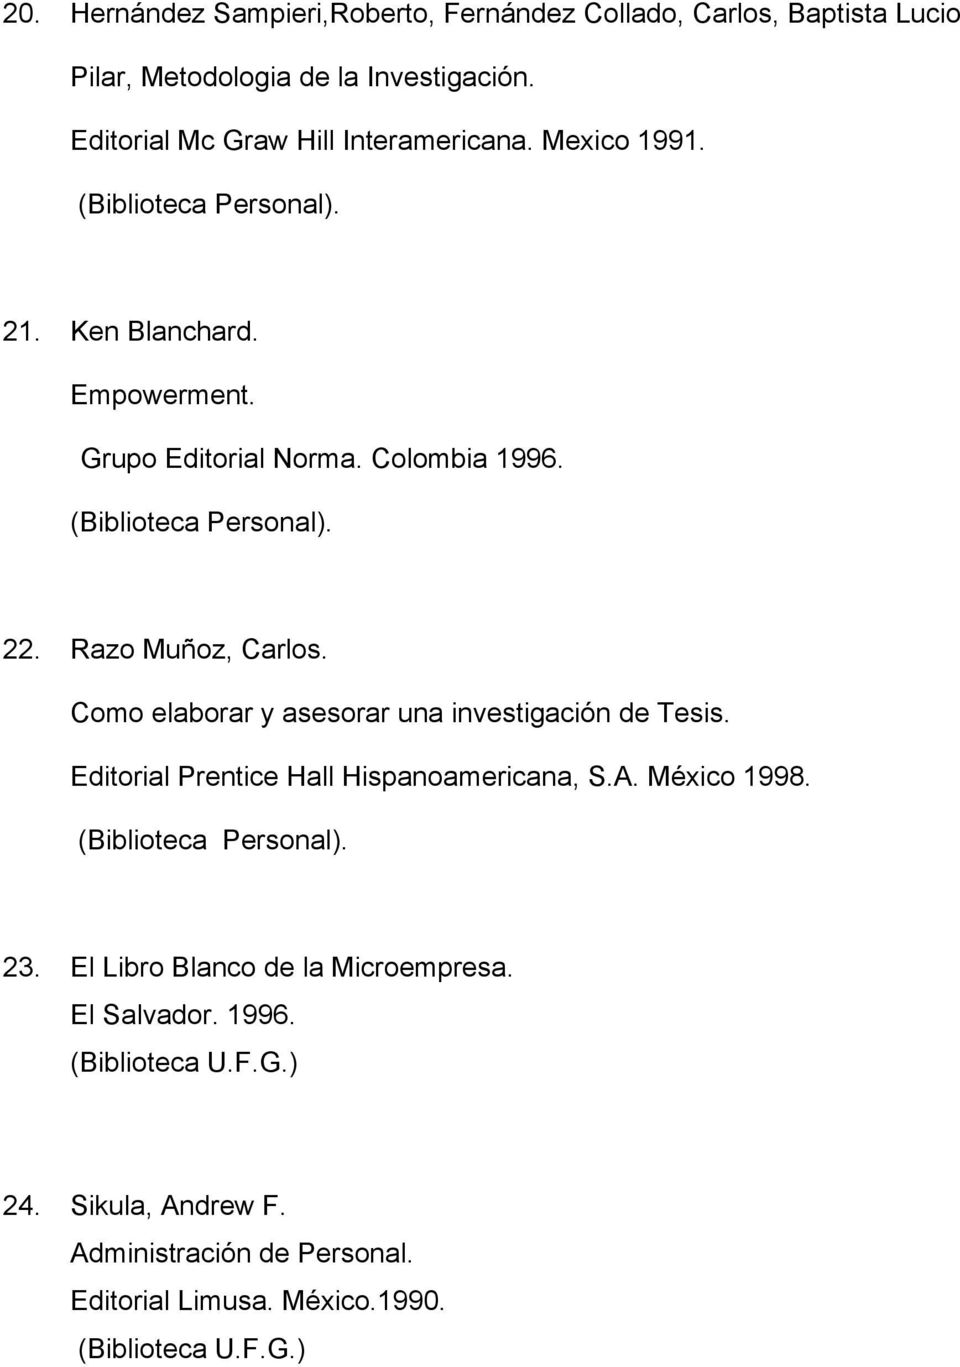 Razo Muñoz, Carlos. Como elaborar y asesorar una investigación de Tesis. Editorial Prentice Hall Hispanoamericana, S.A. México 1998. 23.